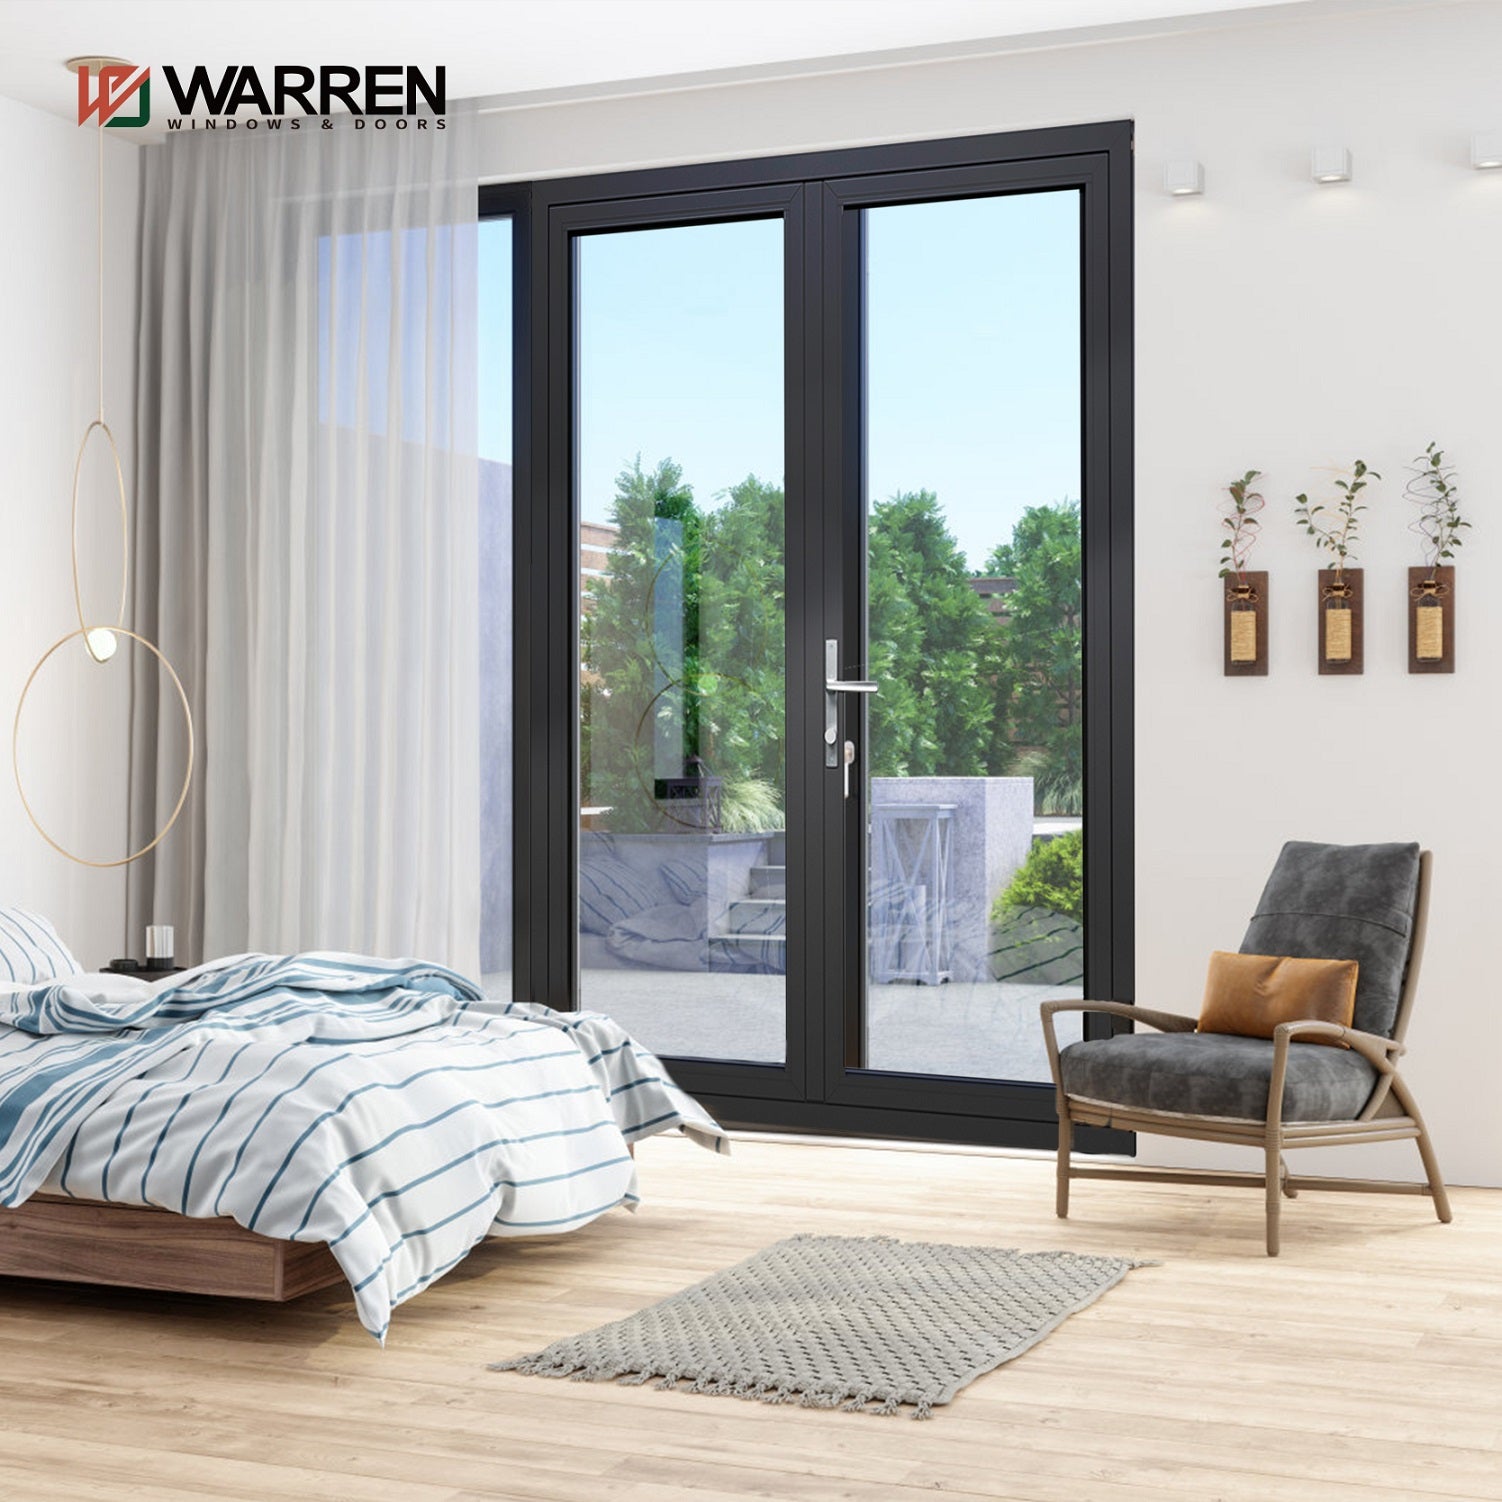 Warren 60x80 French Patio Doors Double Doors Interior With Glass